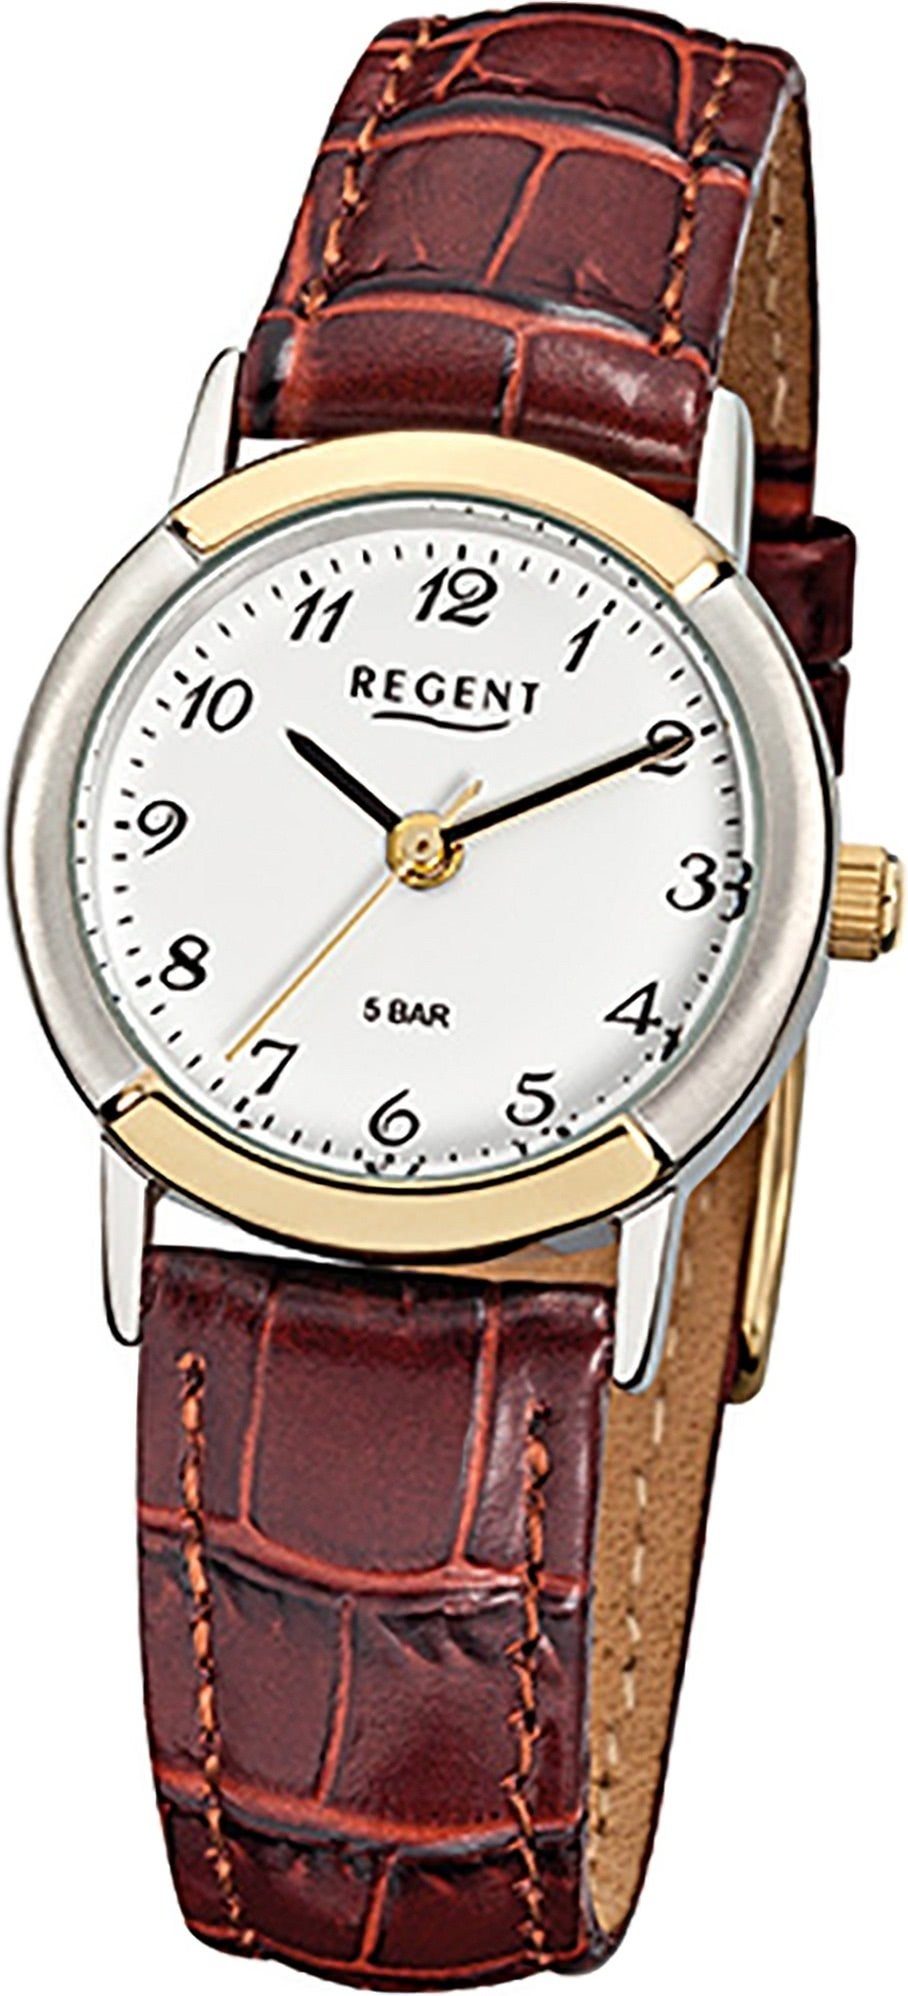 Regent Quarzuhr Regent Leder Damen Uhr F-576 Quarzuhr, Damenuhr Lederarmband braun, rundes Gehäuse, klein (ca. 25mm)